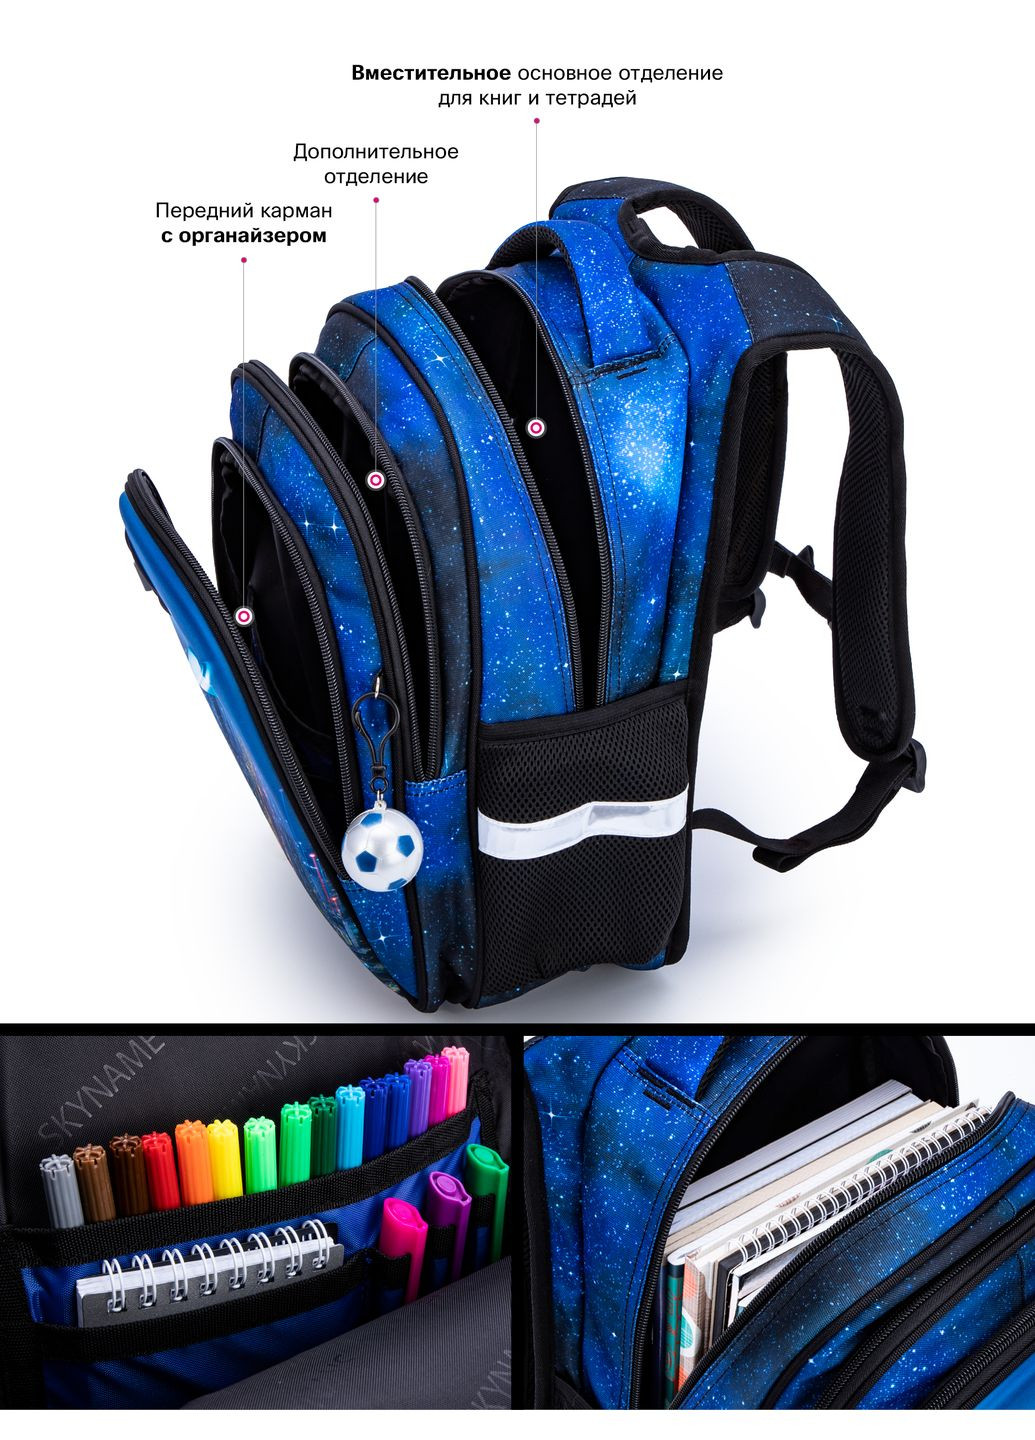 Школьный рюкзак с ортопедической спинкой для мальчика синий Космос /SkyName 37х30х18 см для младших классов (R2-190) Winner (293504223)